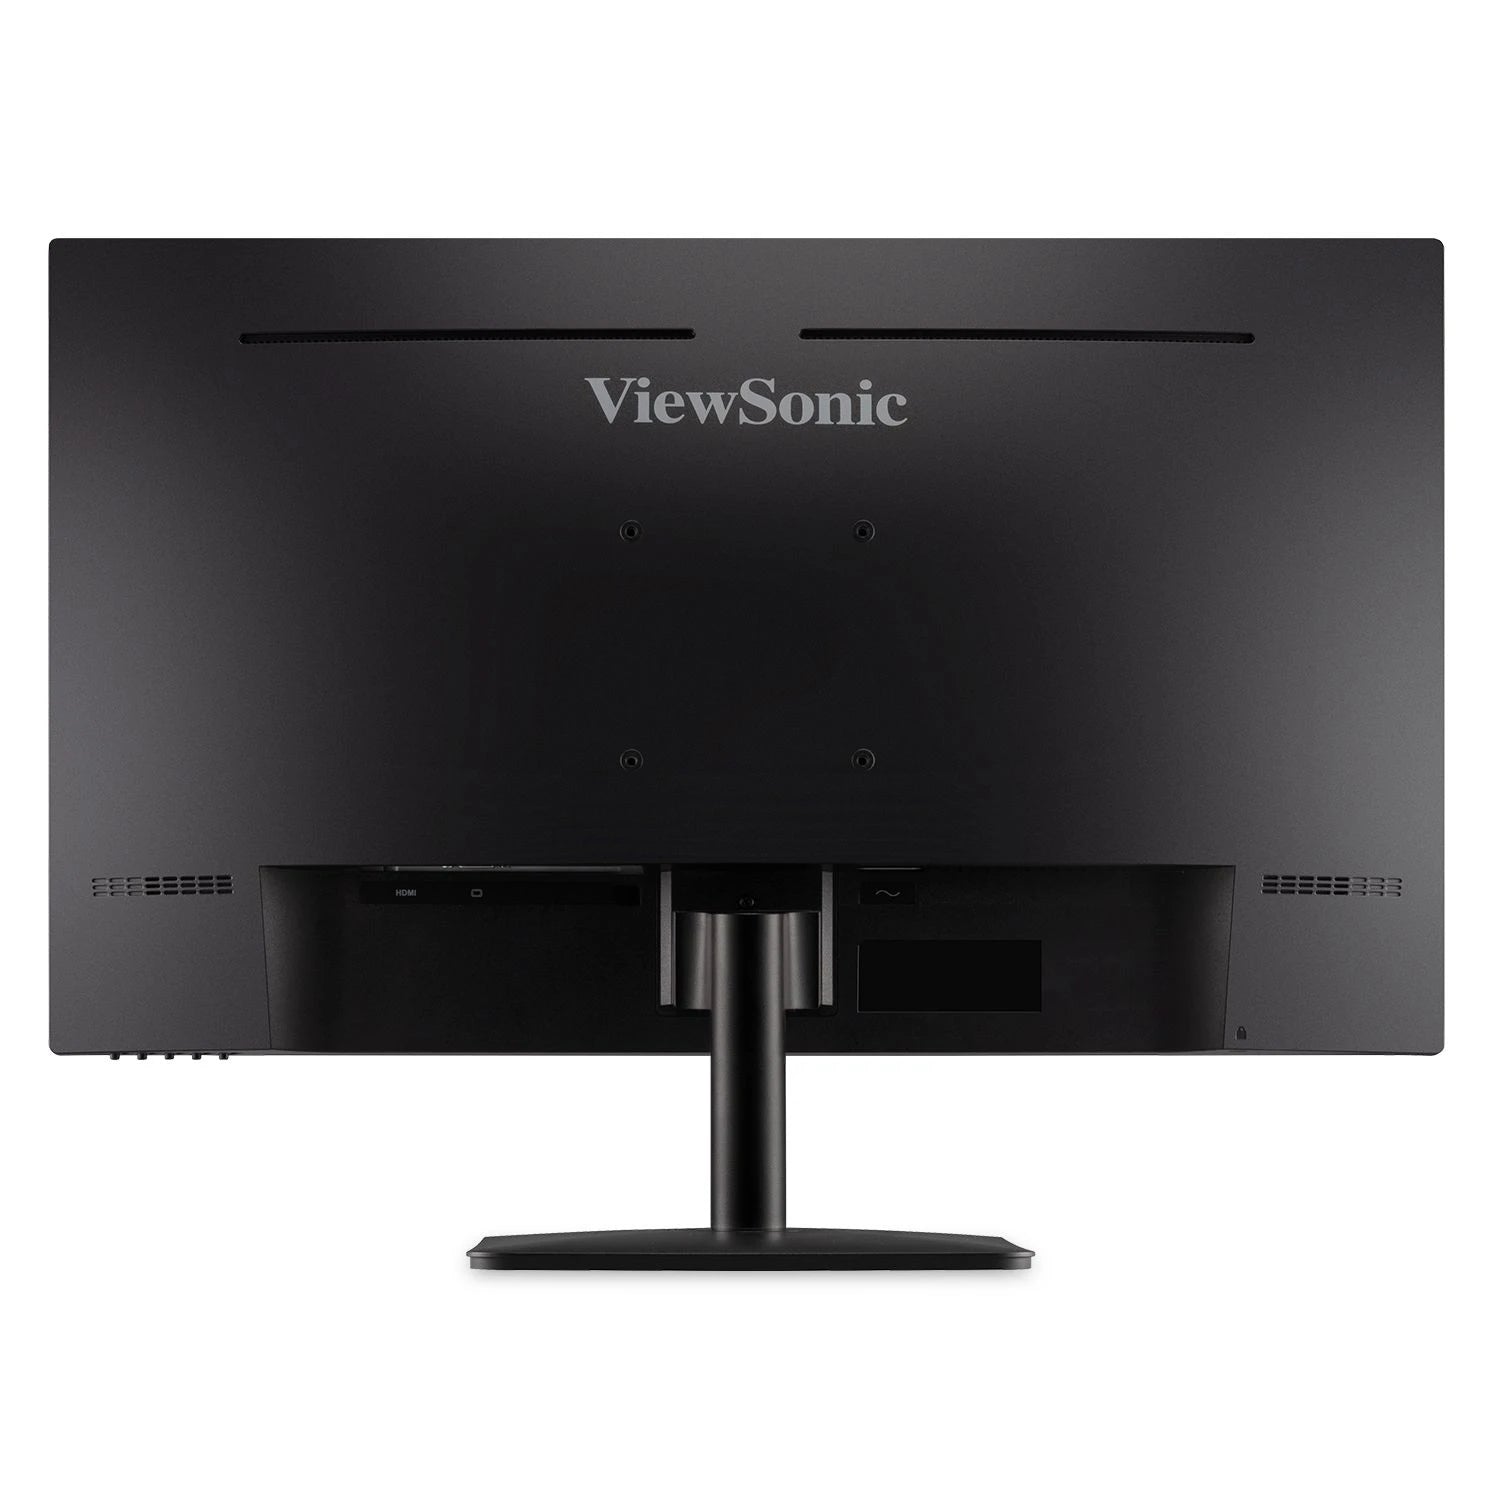 Monitor Viewsonic Va2735-H, 1920 X 1080, Full Hd, Panel Ips, Free Sync, 75 Hz, 4 Ms, Cable Hdmi Incluido, Vga In, Vesa, 3 Años De Garantia